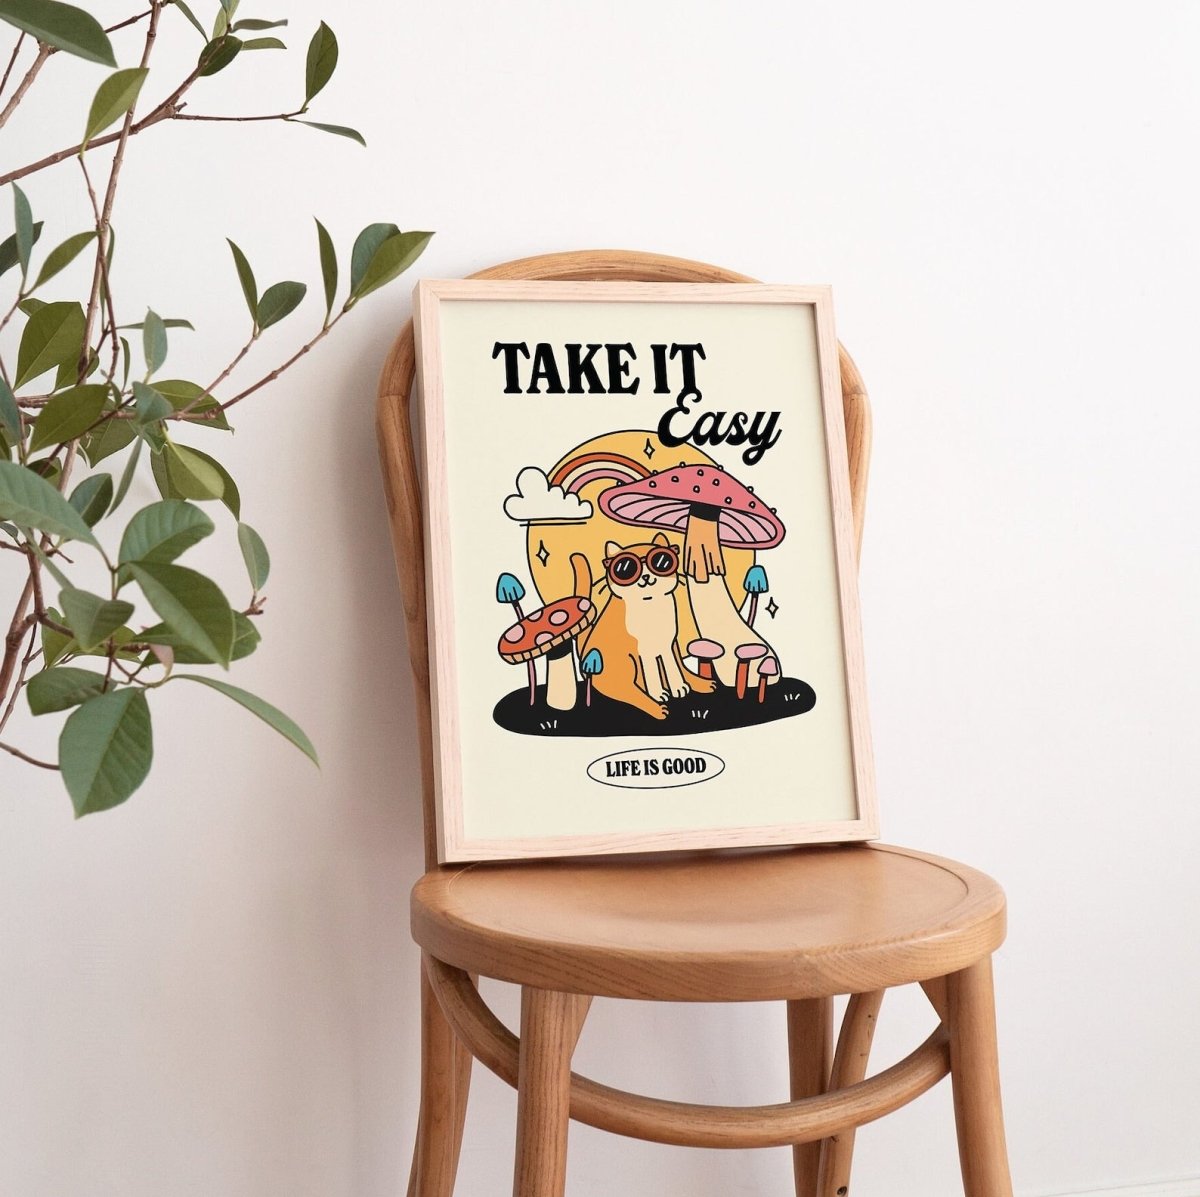 Framed "Take It Easy" Print - Framed Prints - Kinder Planet Company